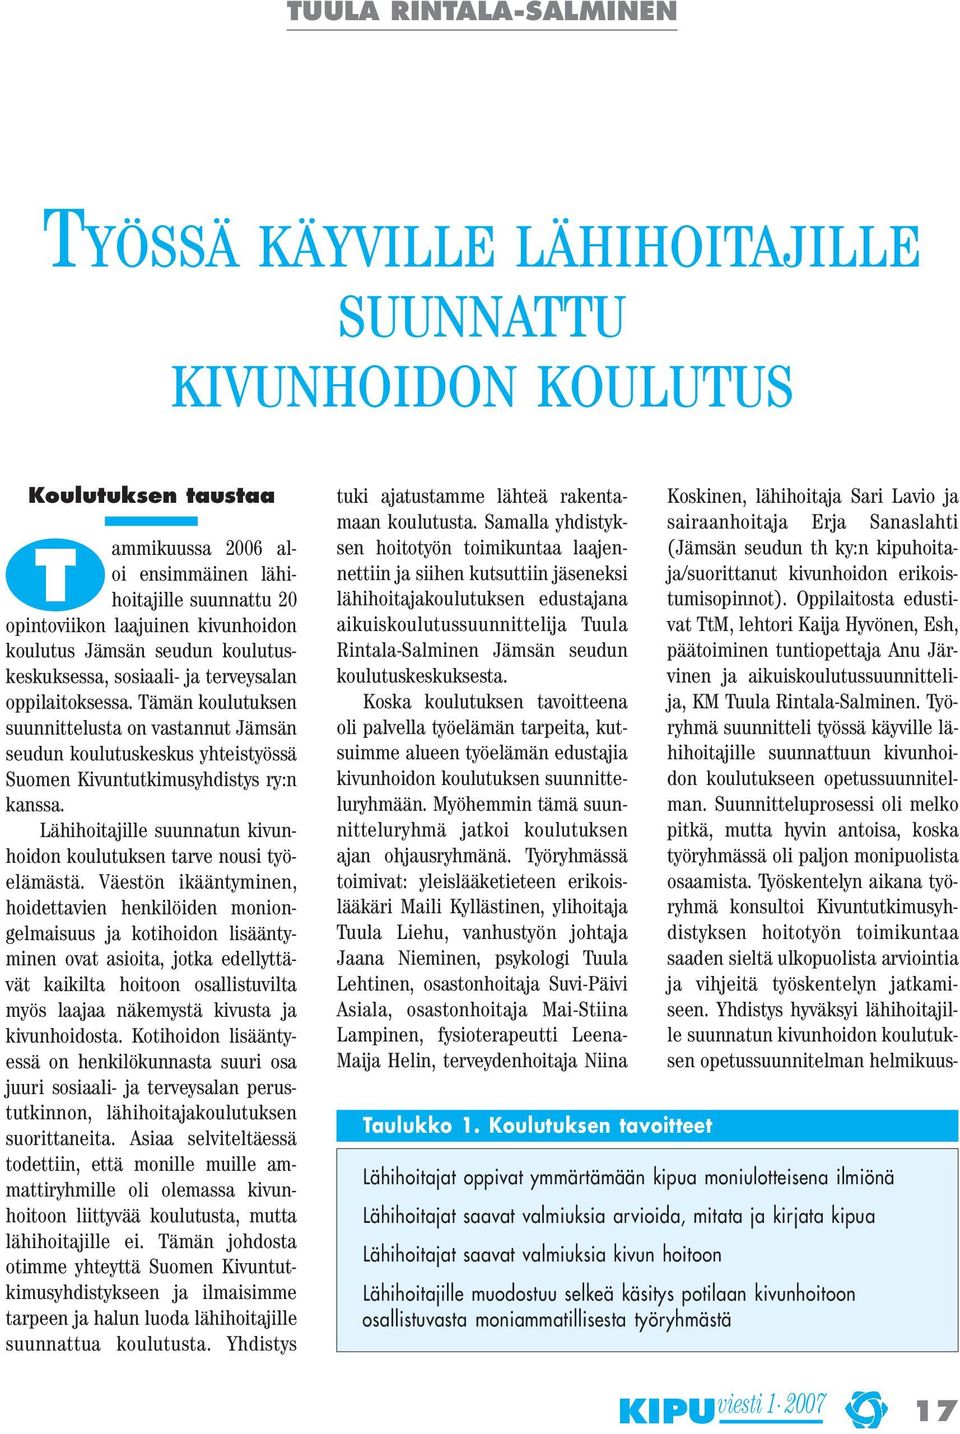 Tämän koulutuksen suunnittelusta on vastannut Jämsän seudun koulutuskeskus yhteistyössä Suomen Kivuntutkimusyhdistys ry:n kanssa.